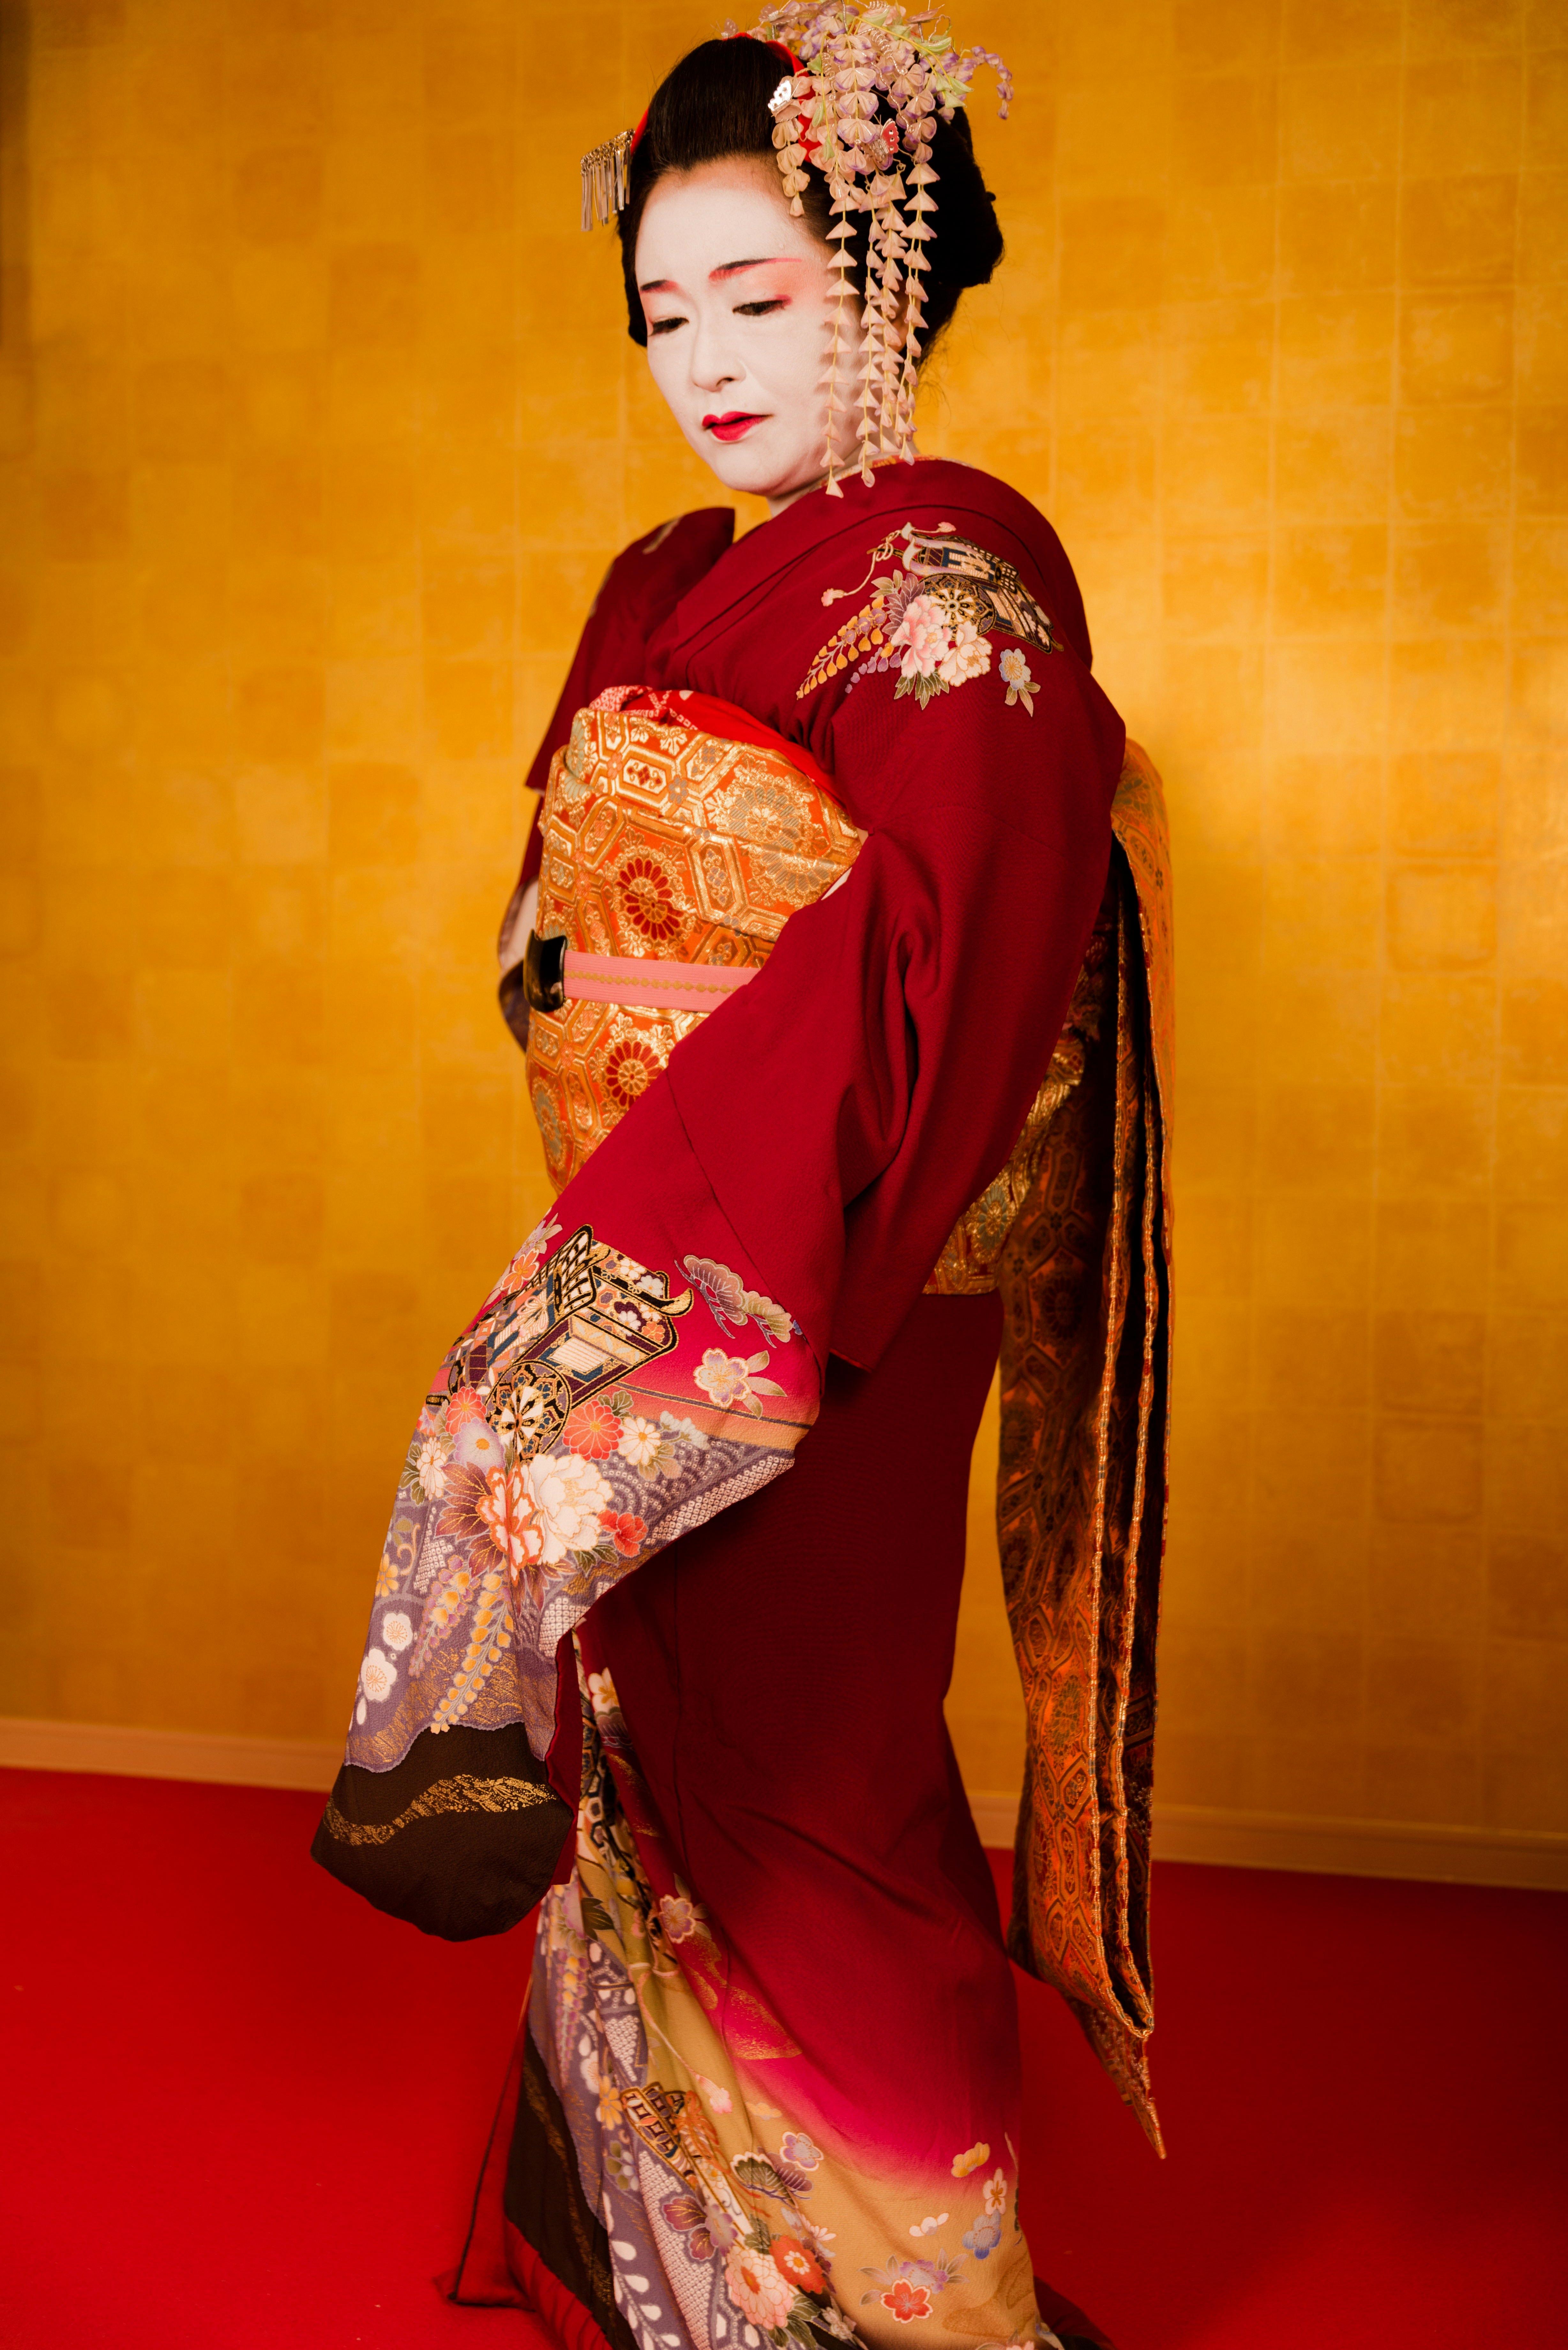 danna geisha